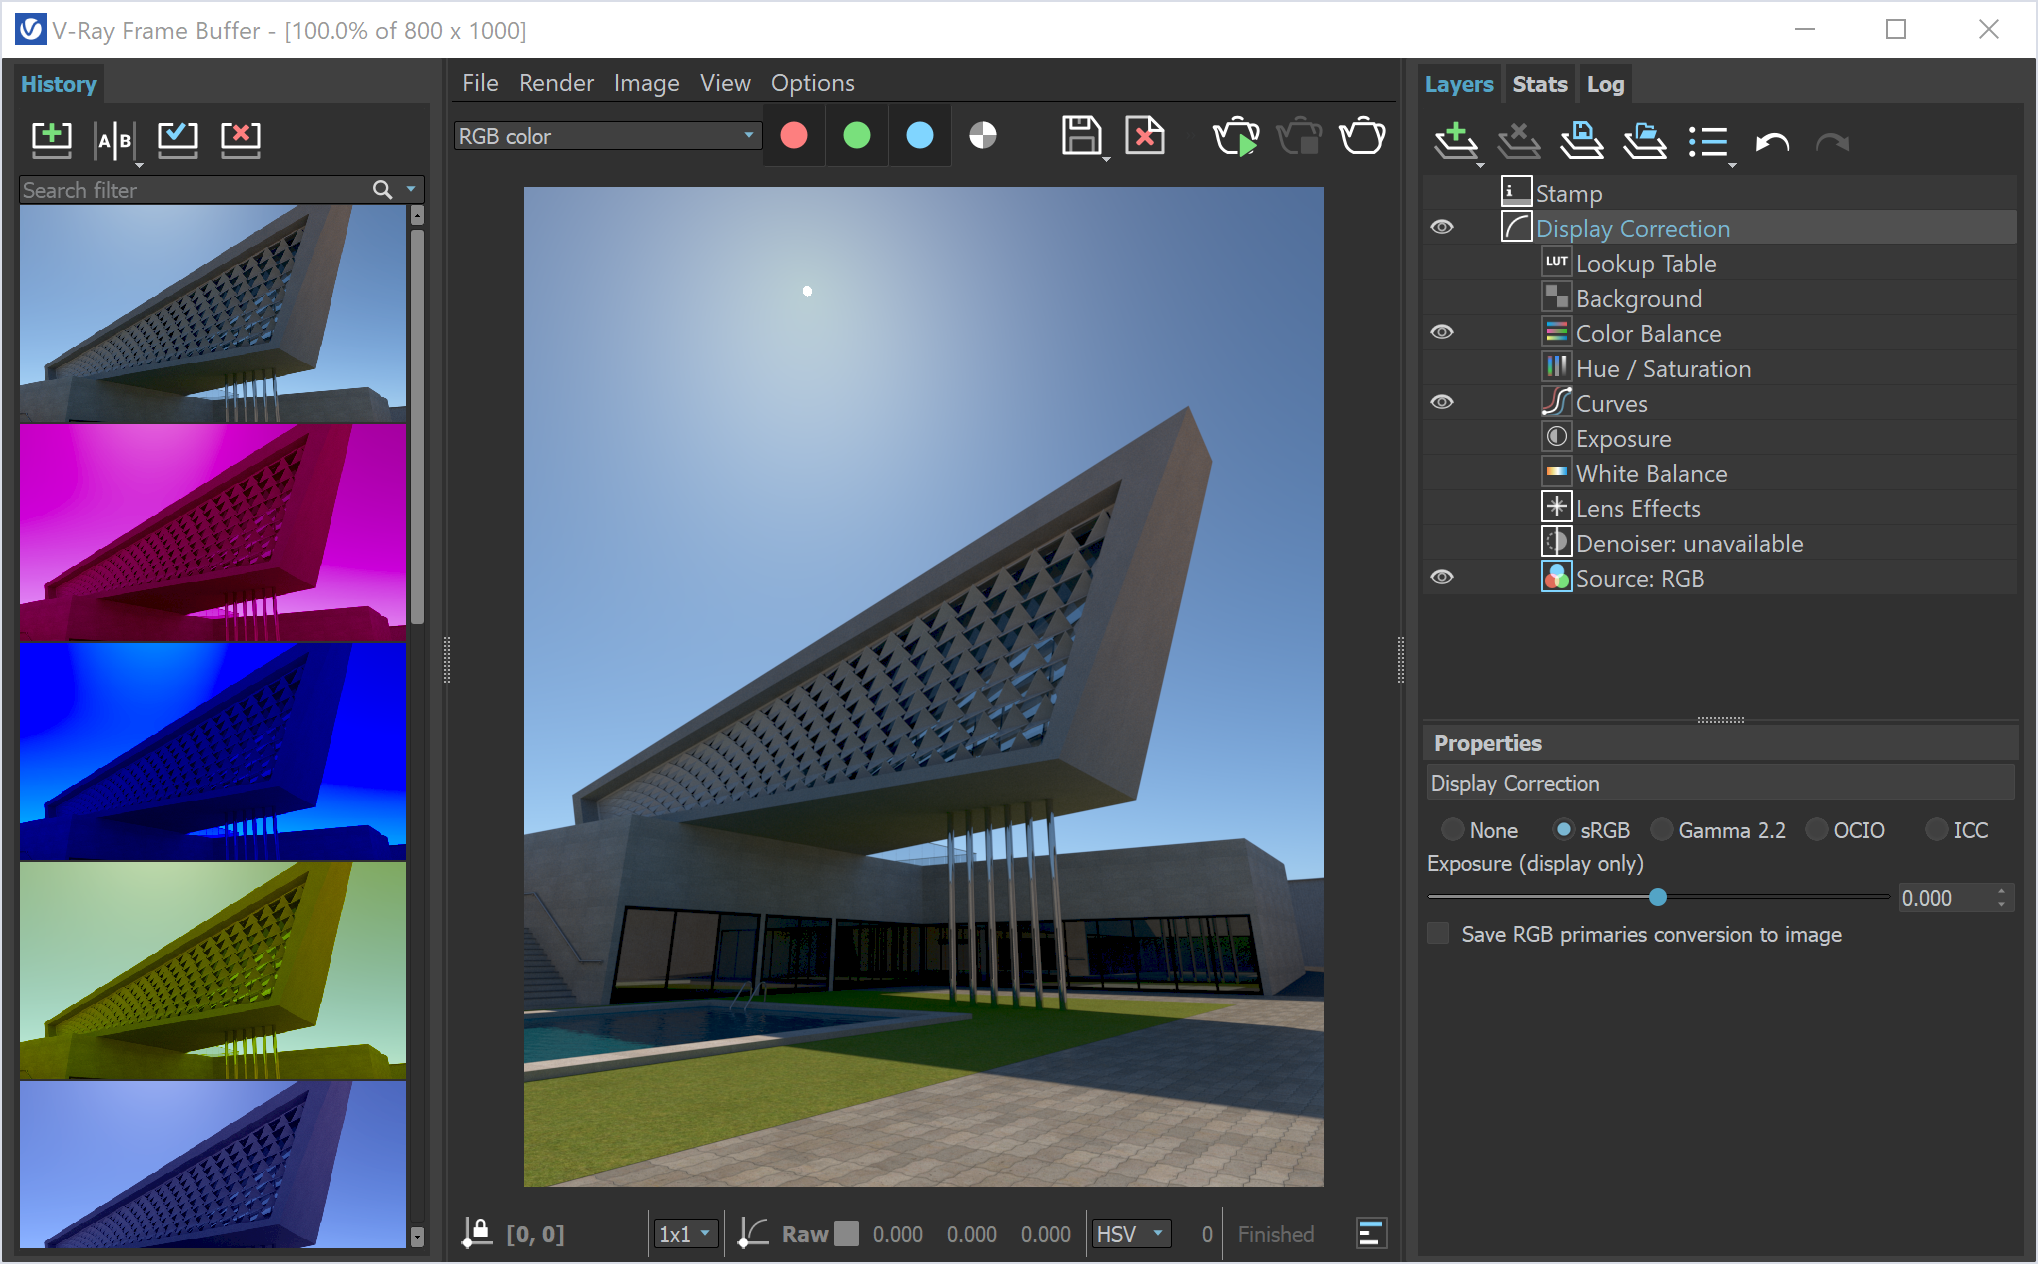 Với V-Ray frame buffer, bạn có thể điều chỉnh độ sáng, độ tương phản và cảm quan màu sắc trong quá trình rendering. Xem hình ảnh để khám phá cách sử dụng một trong những công cụ hữu ích nhất cho dự án của bạn.